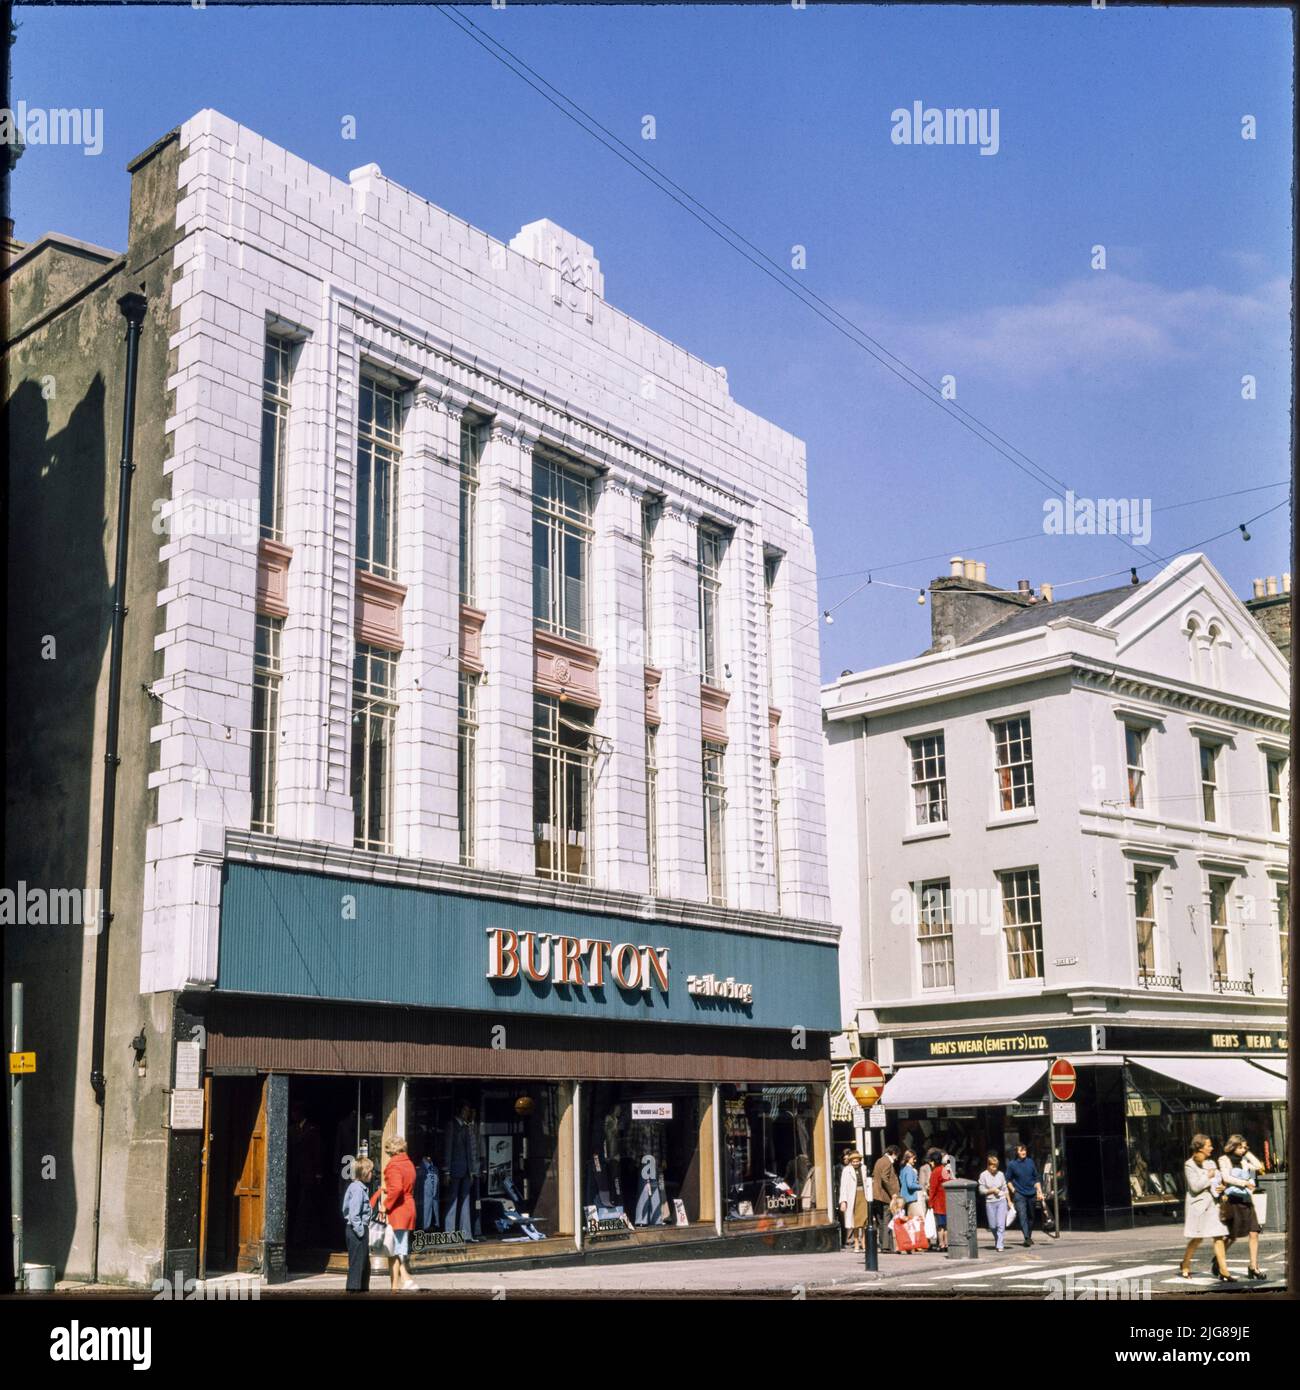 Burton, rue Victoria, Douglas, Île de Man, 1975-1980. Le magasin Burton au 22, rue Victoria, vu du sud-ouest. Le magasin Burton de Douglas a été construit en 1929. Banque D'Images